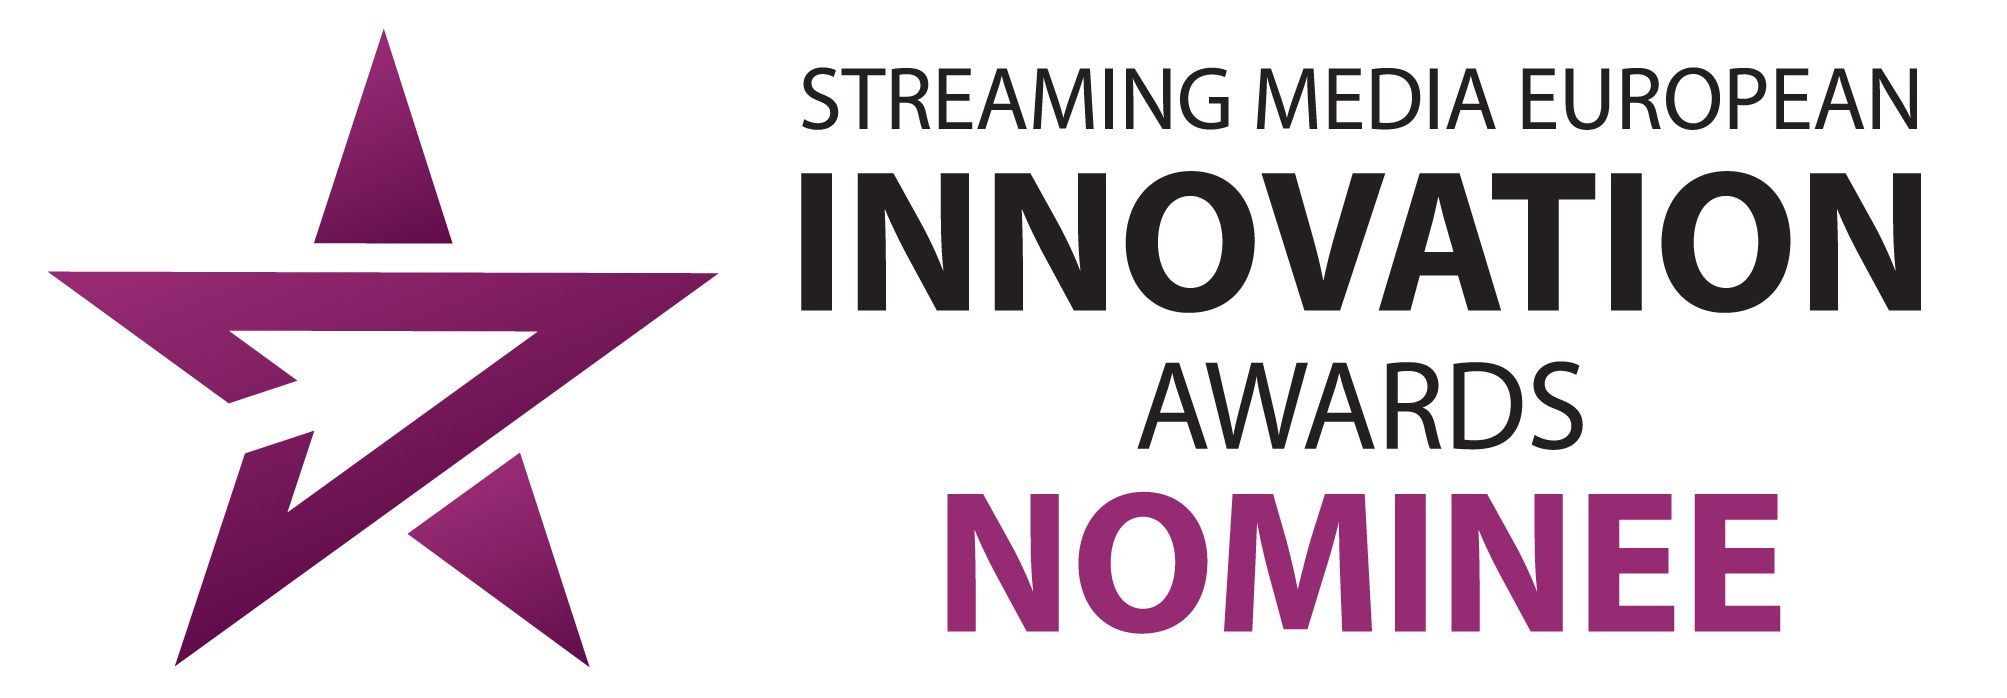 SMEu_Innovation-Awards-Nominee (1).jpg